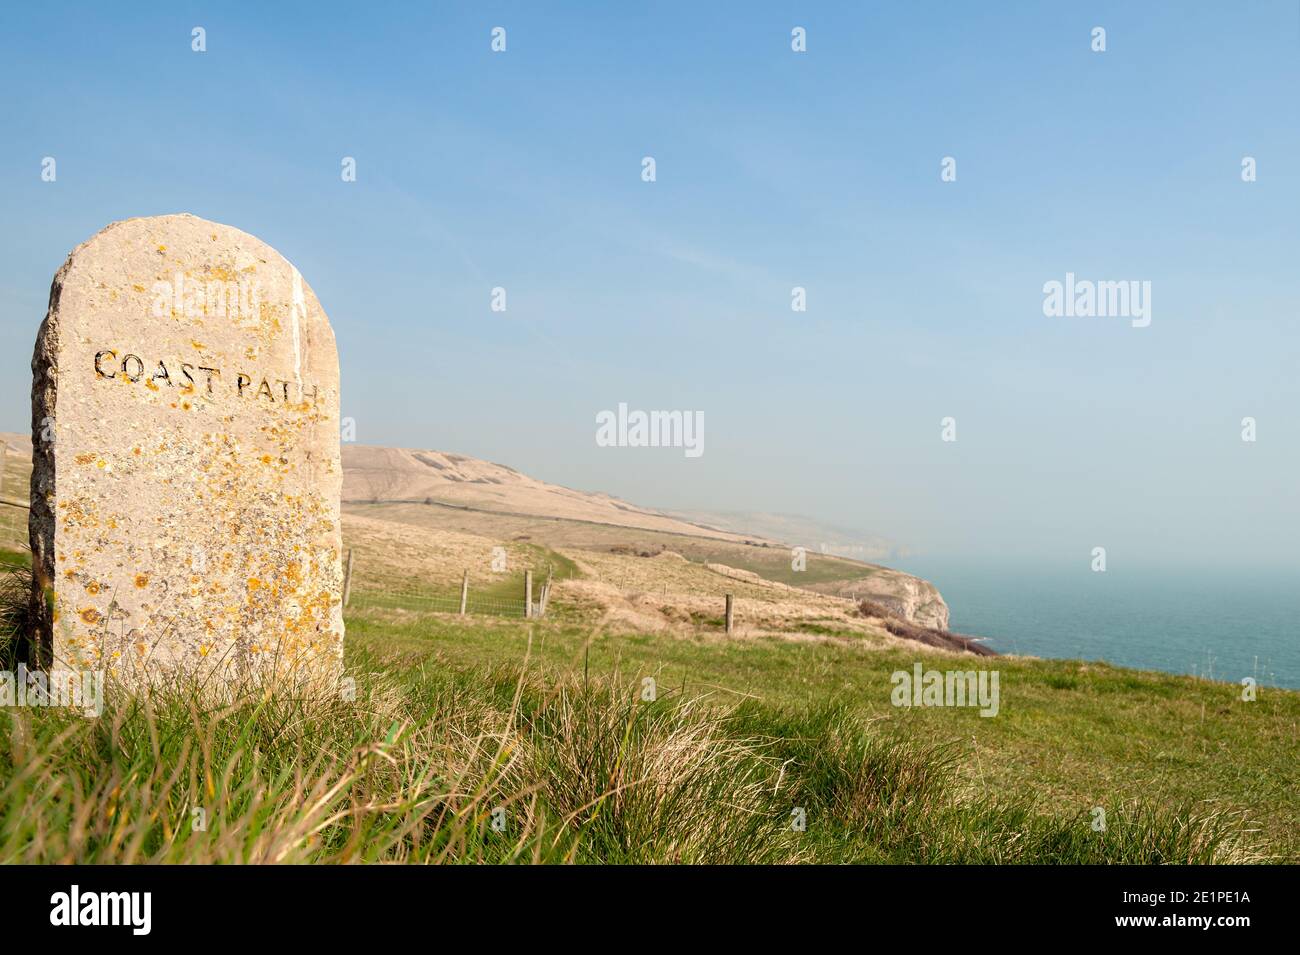 Viejo marcador de piedra con el texto de camino de la costa tallado y descolorido vista del mar y acantilados en el fondo para su uso como un fondo Foto de stock